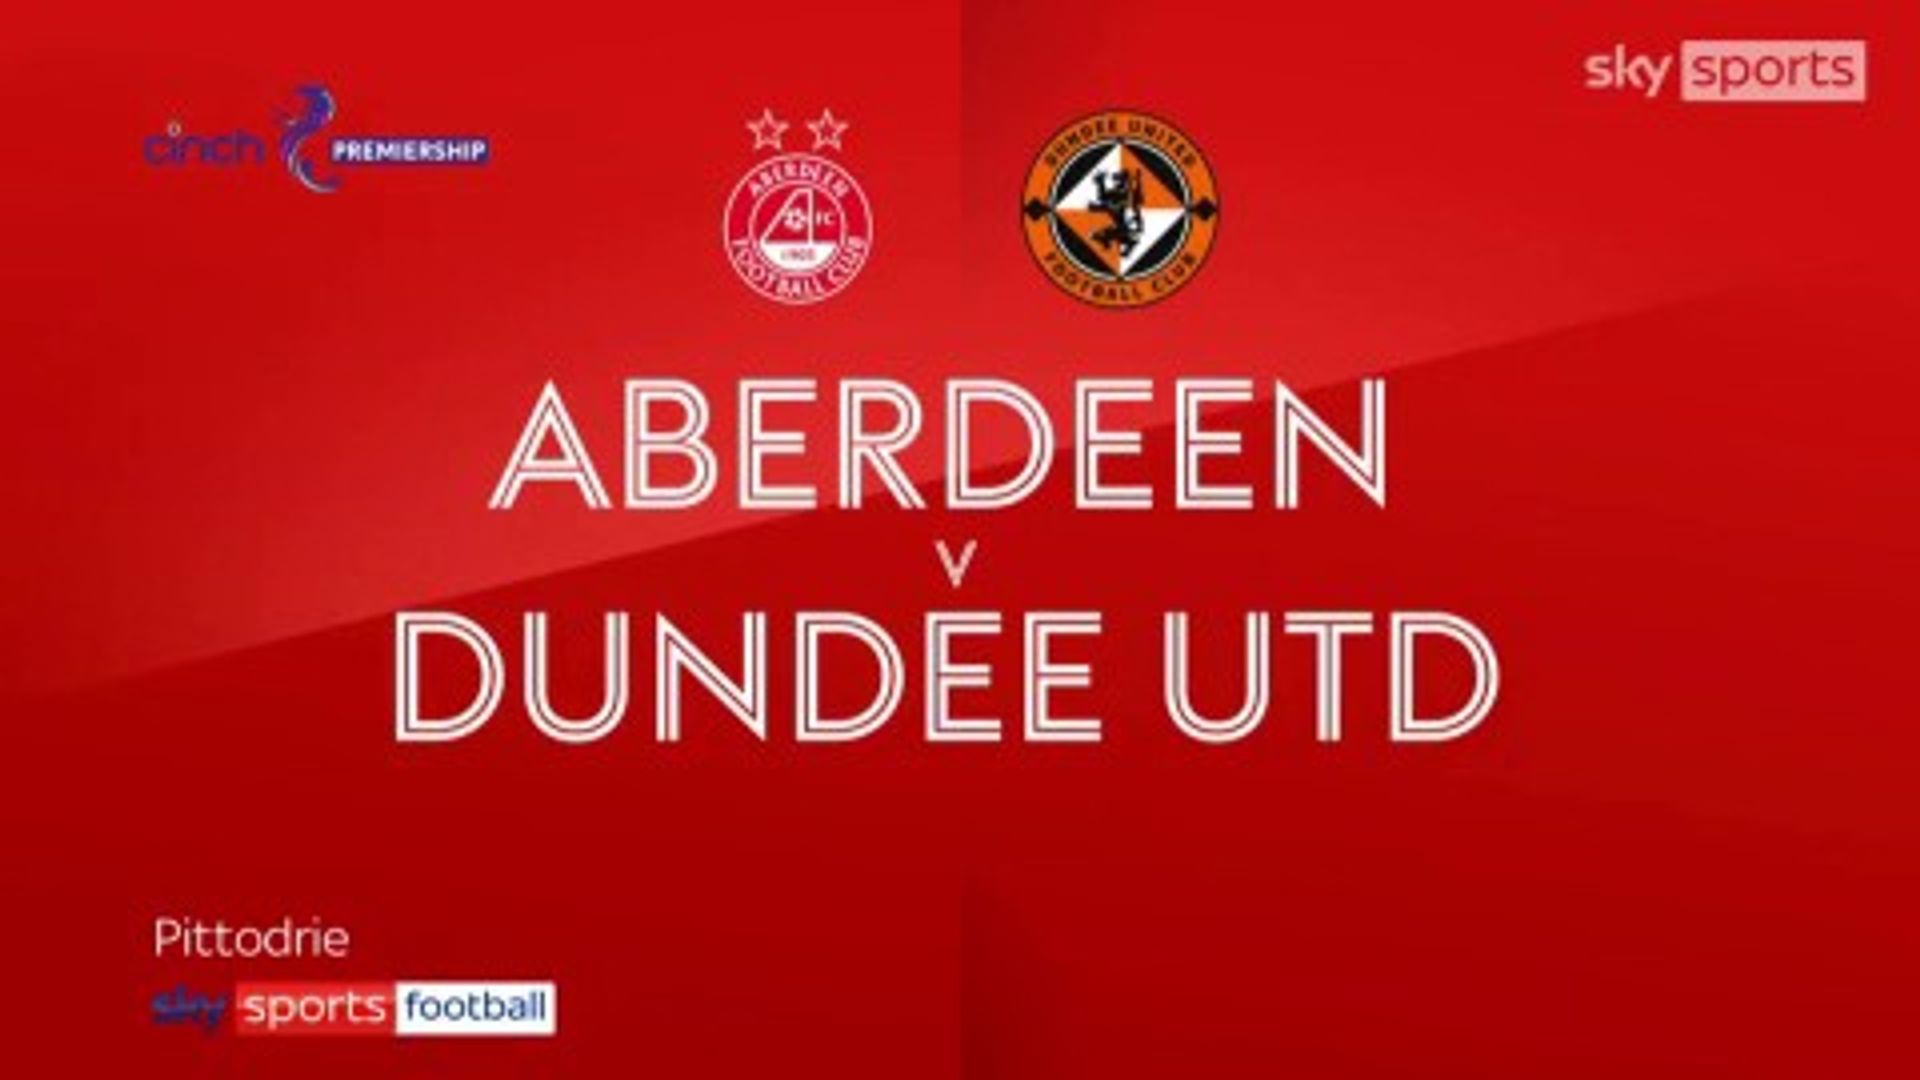 Aberdeen 1-0 Dundee United